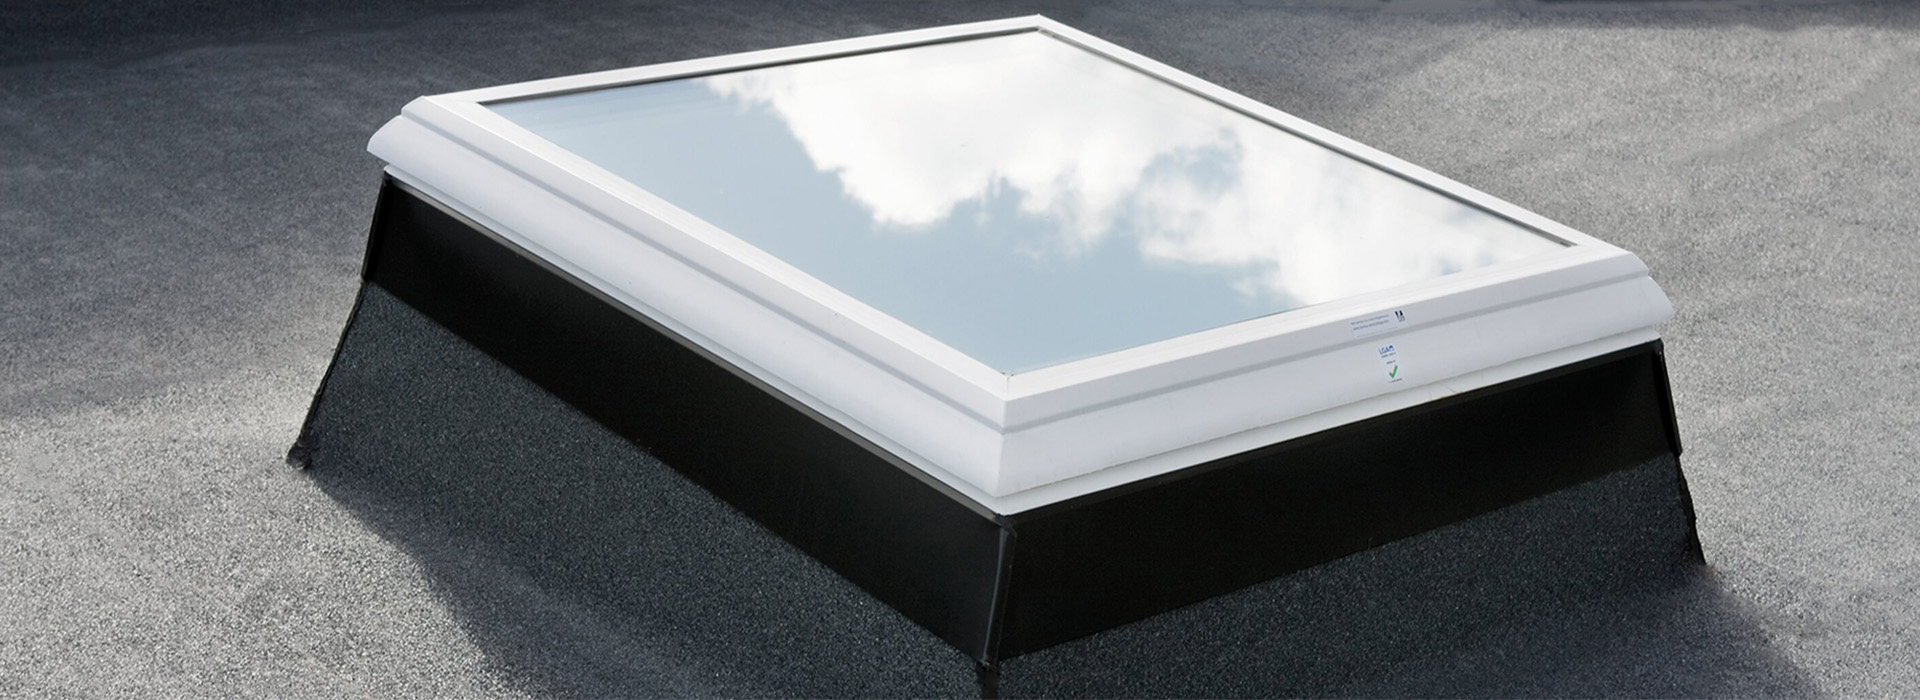 white framed glass skylight in flat roof